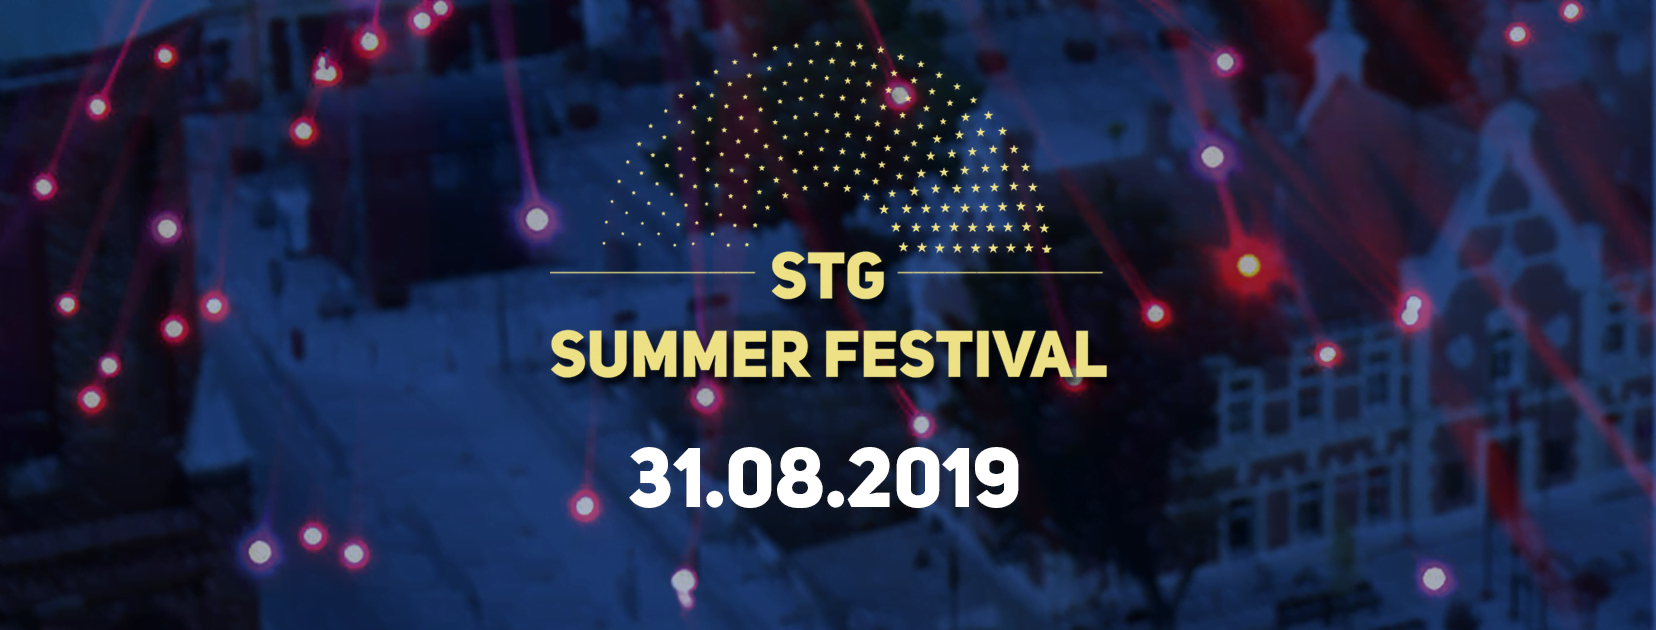 STG Summer Festival